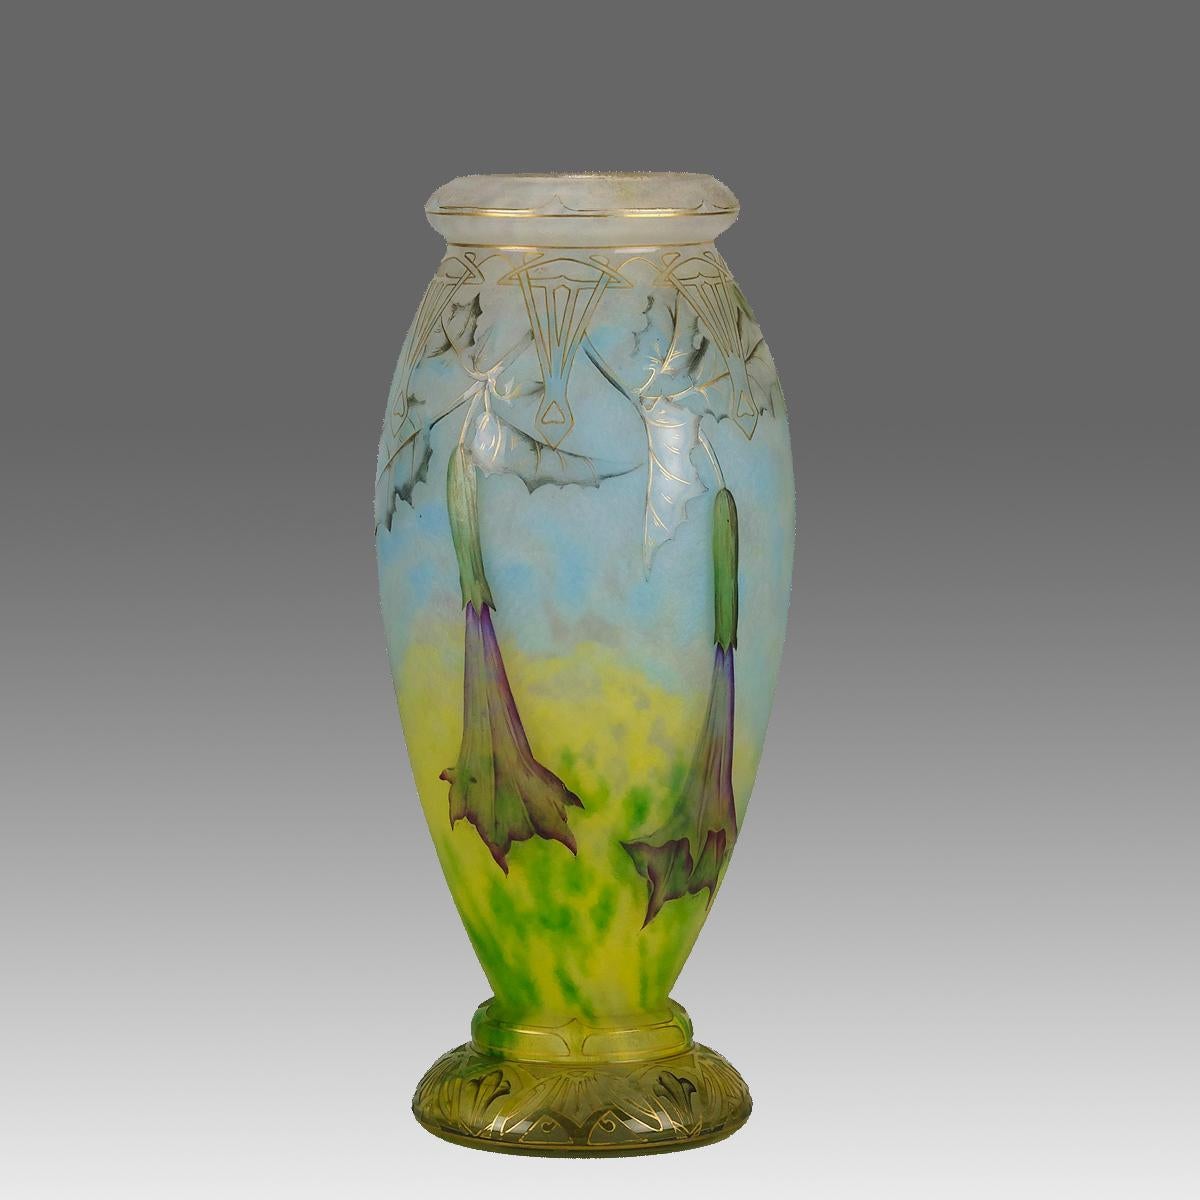 Magnifique vase en verre camée Art Nouveau du début du 20e siècle, gravé et émaillé de Datura en fleurs dans un paysage vibrant. Le dessin est rehaussé d'un motif doré sur la surface pour donner une profondeur de champ spectaculaire, présentant